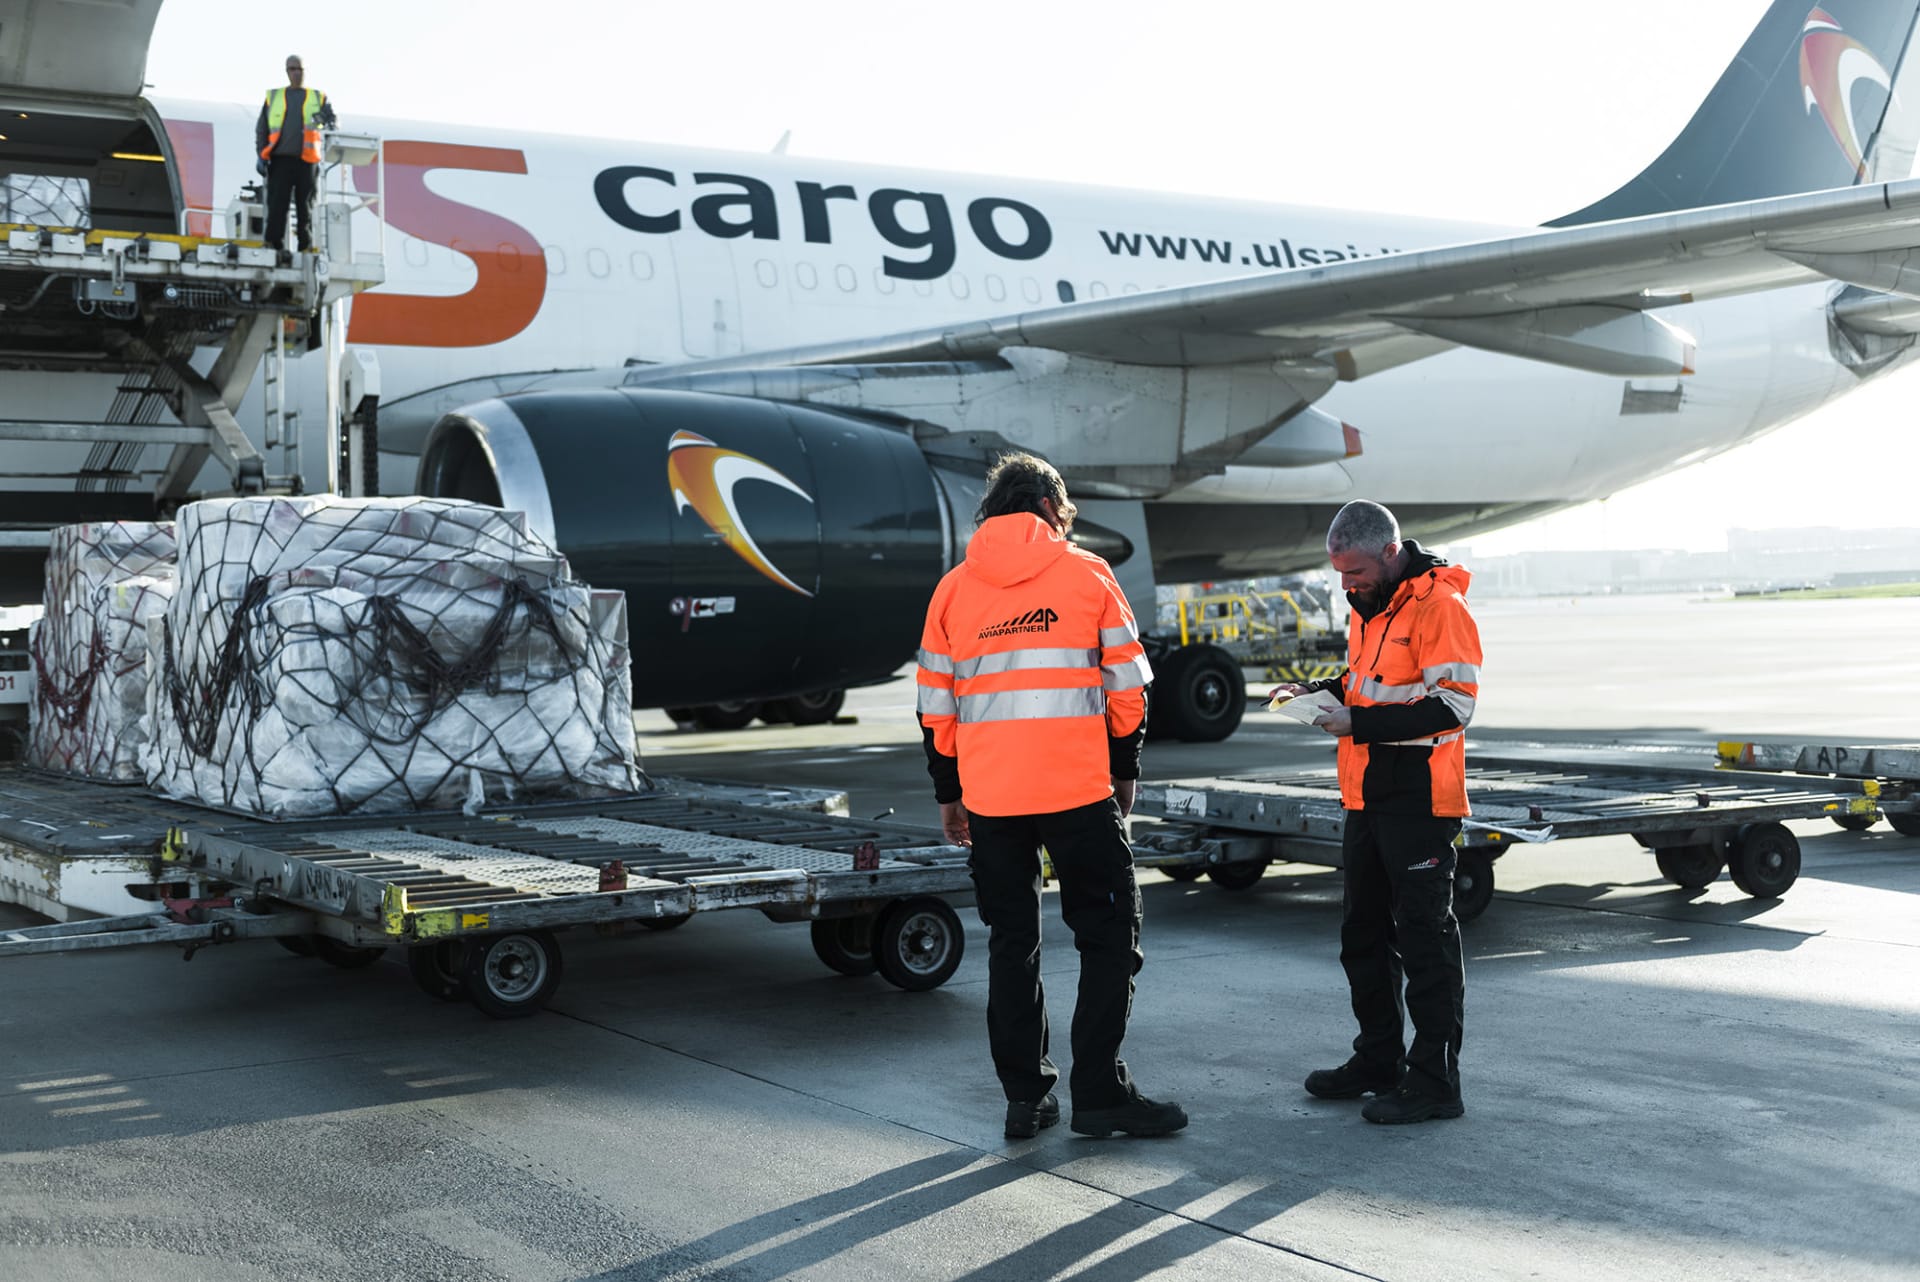 twee Aviapartner medewerkers staan bij een Cargo vliegtuig dat geladen wordt